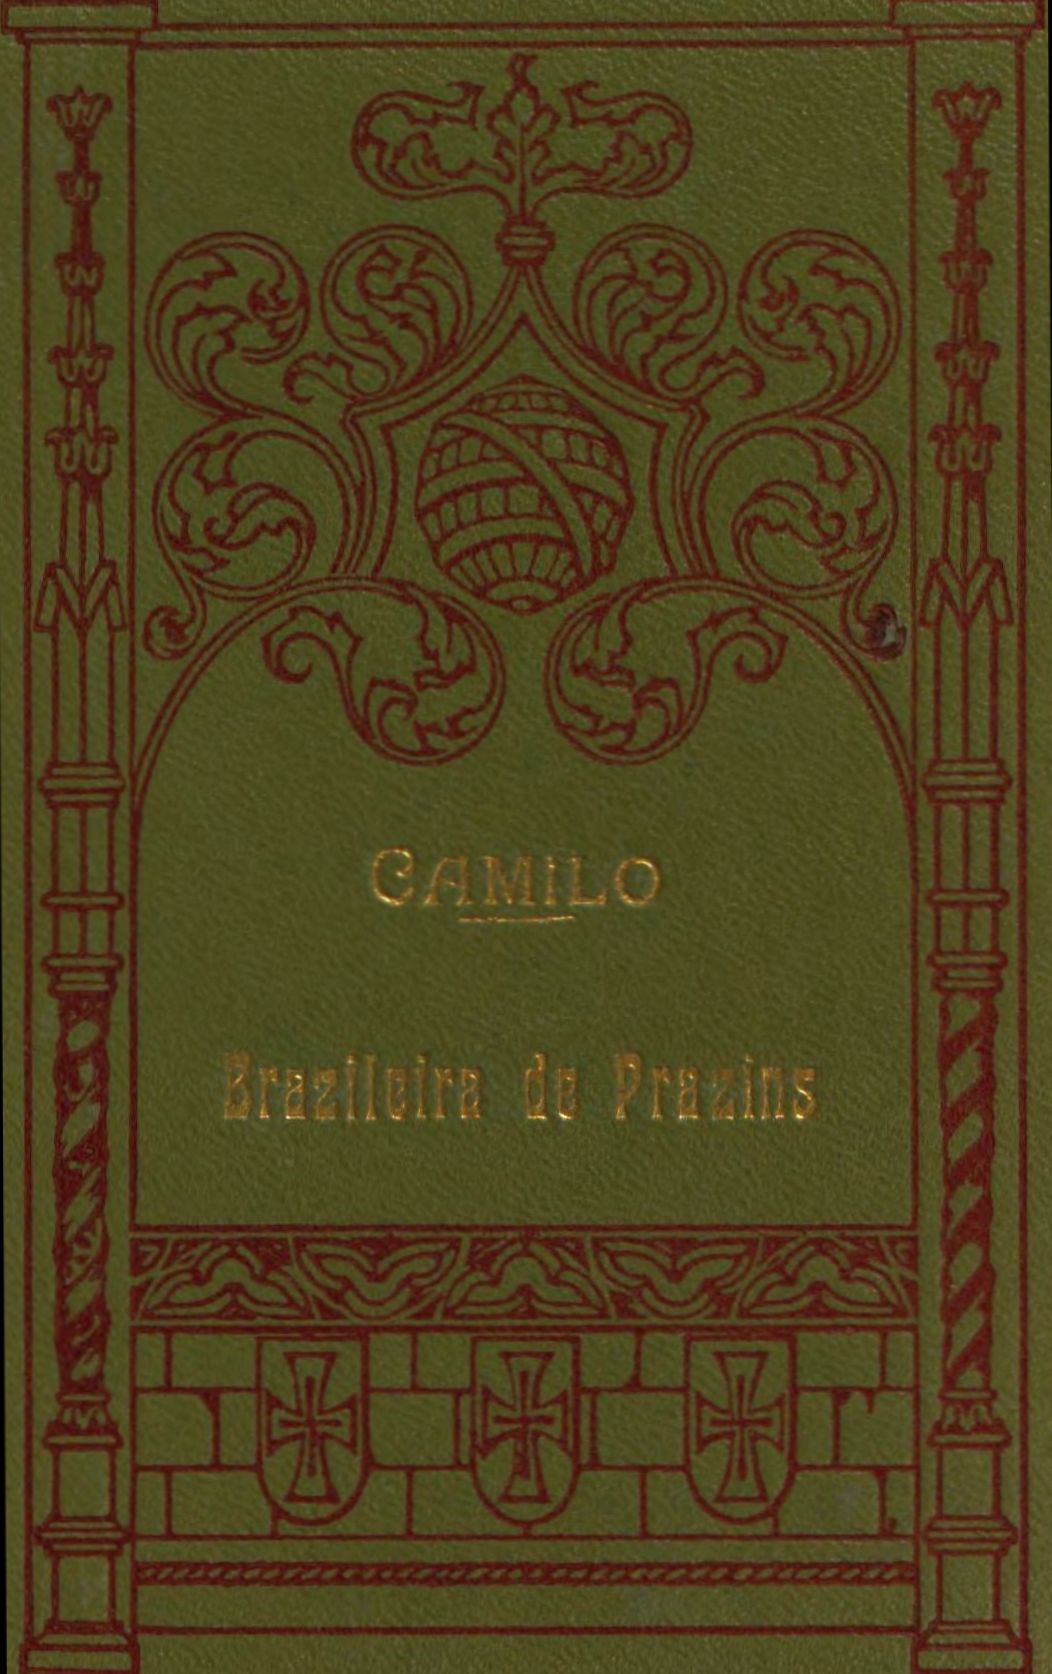 The Project Gutenberg eBook of A brazileira de Prazins, by Camilo Castelo  Branco.